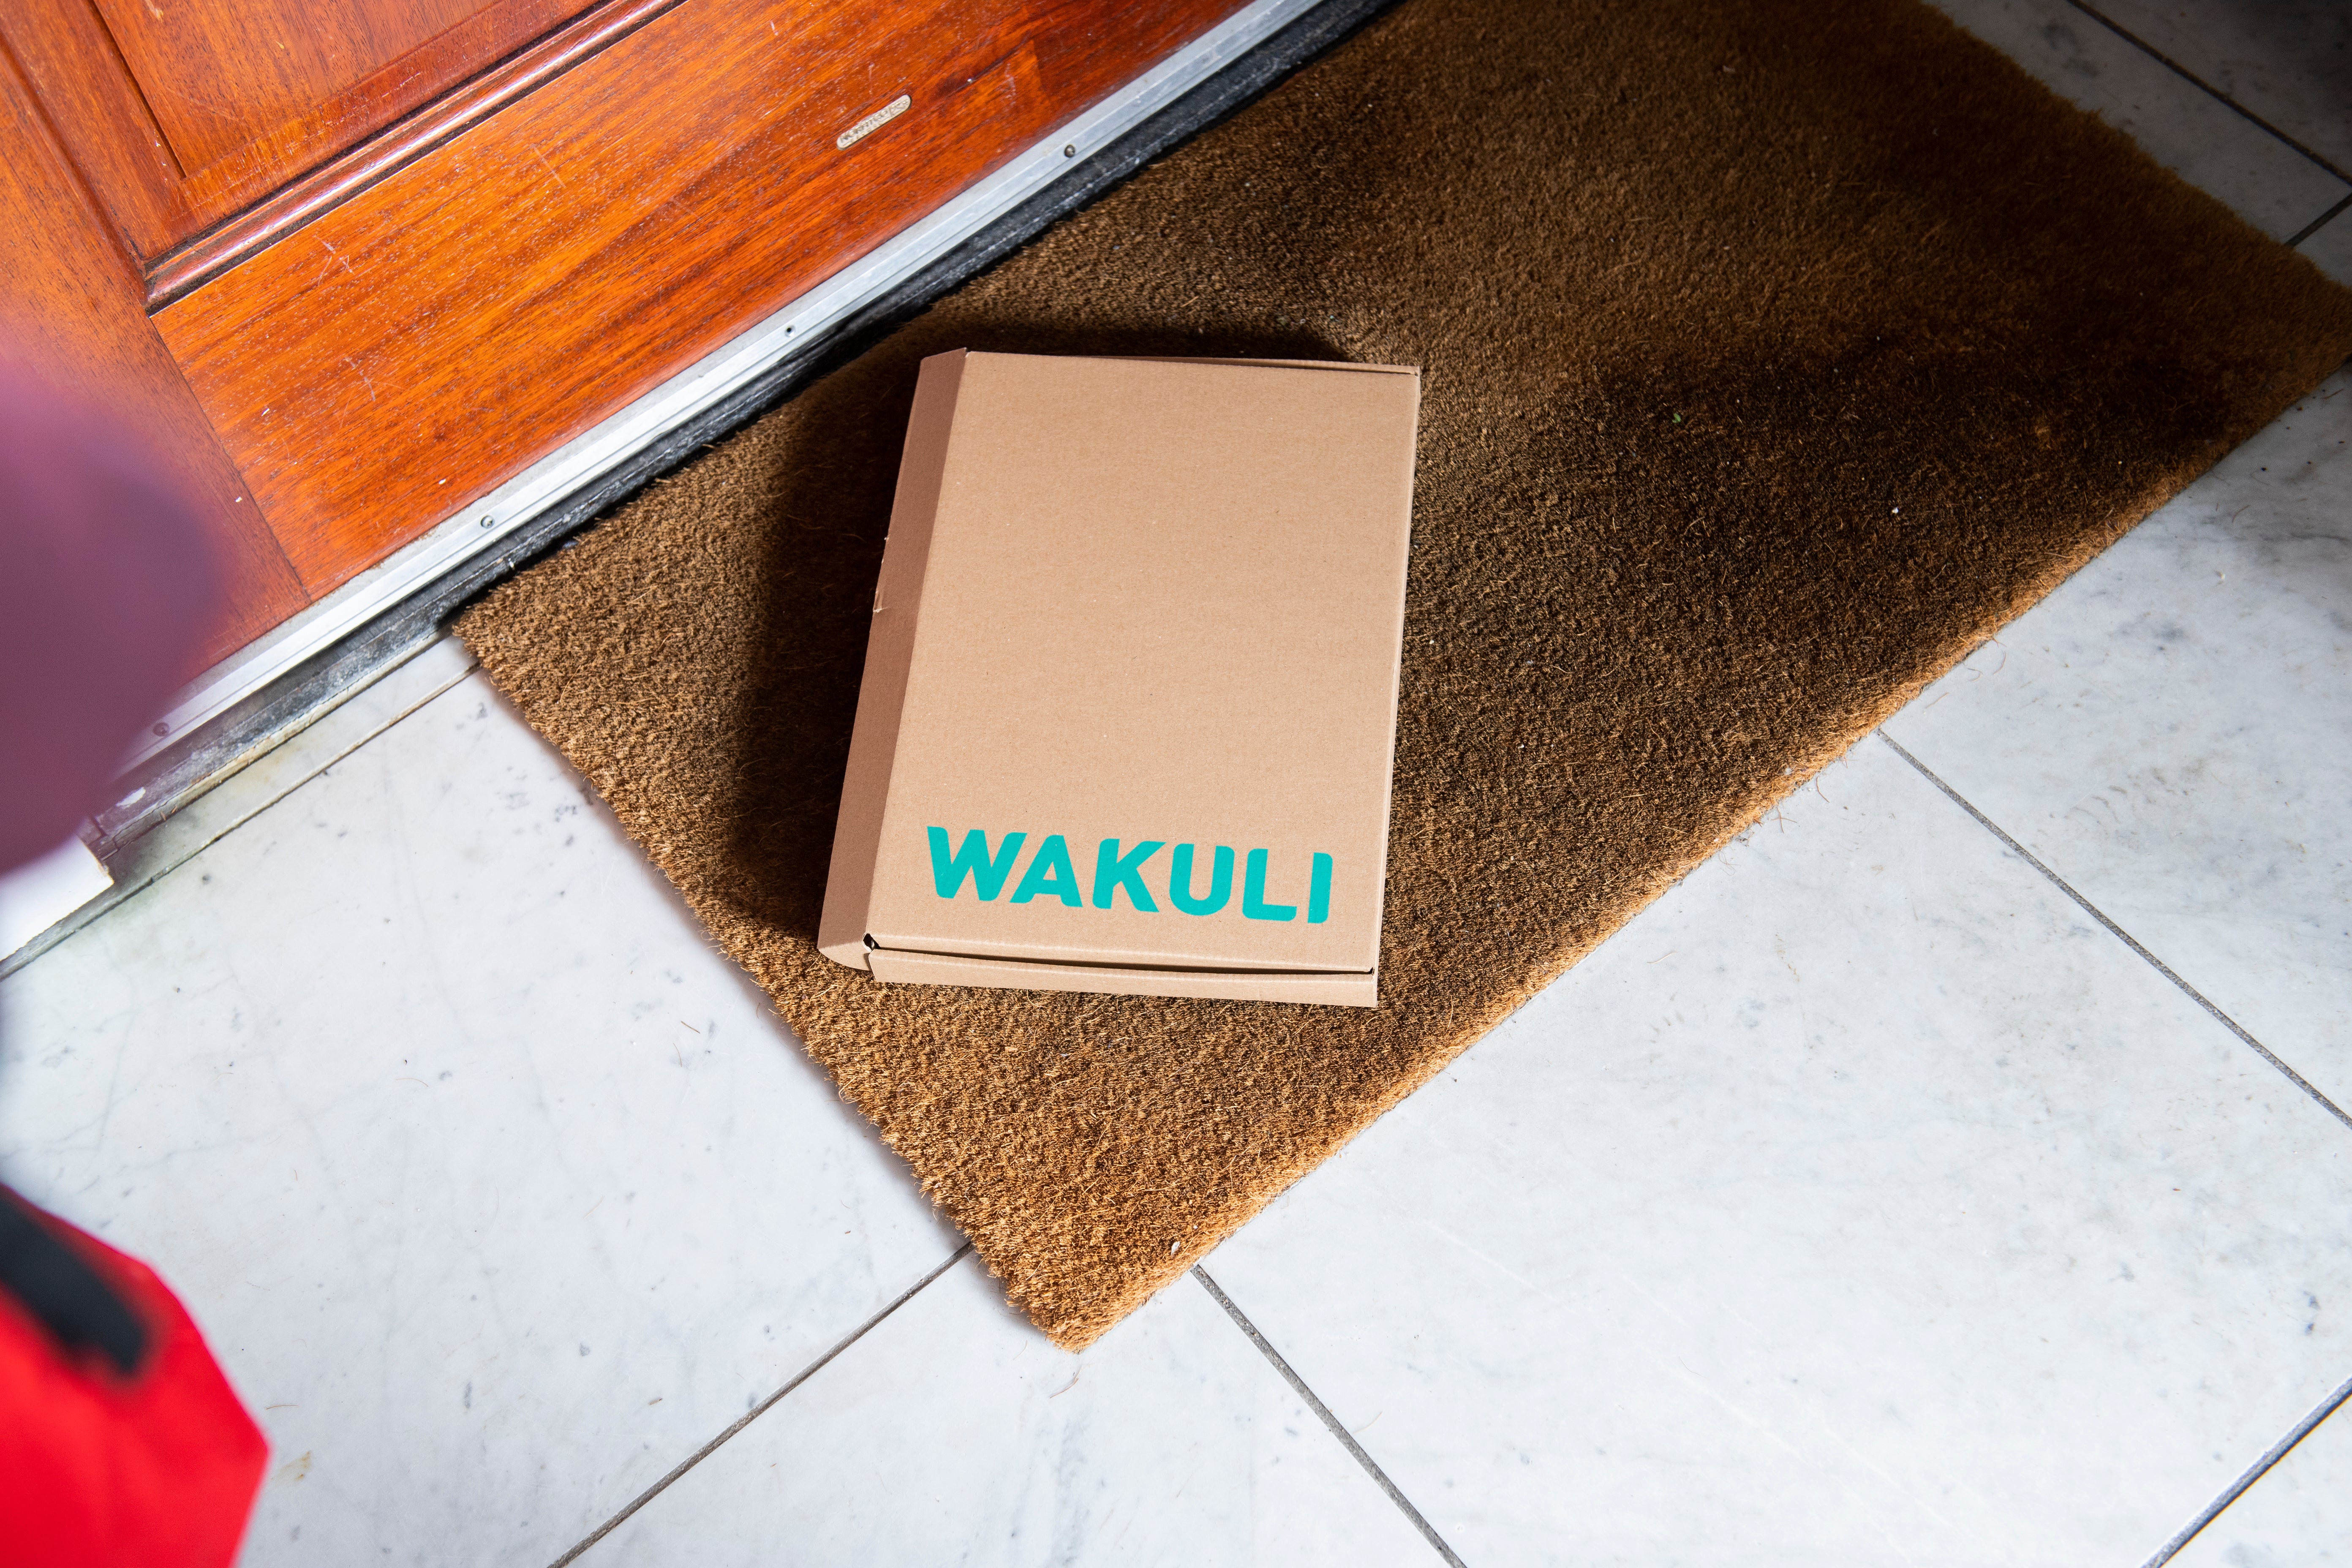 Volautomaat koffie - Een kartonnen doos met Wakuli erop ligt op een deurmat voor een bruine deur.